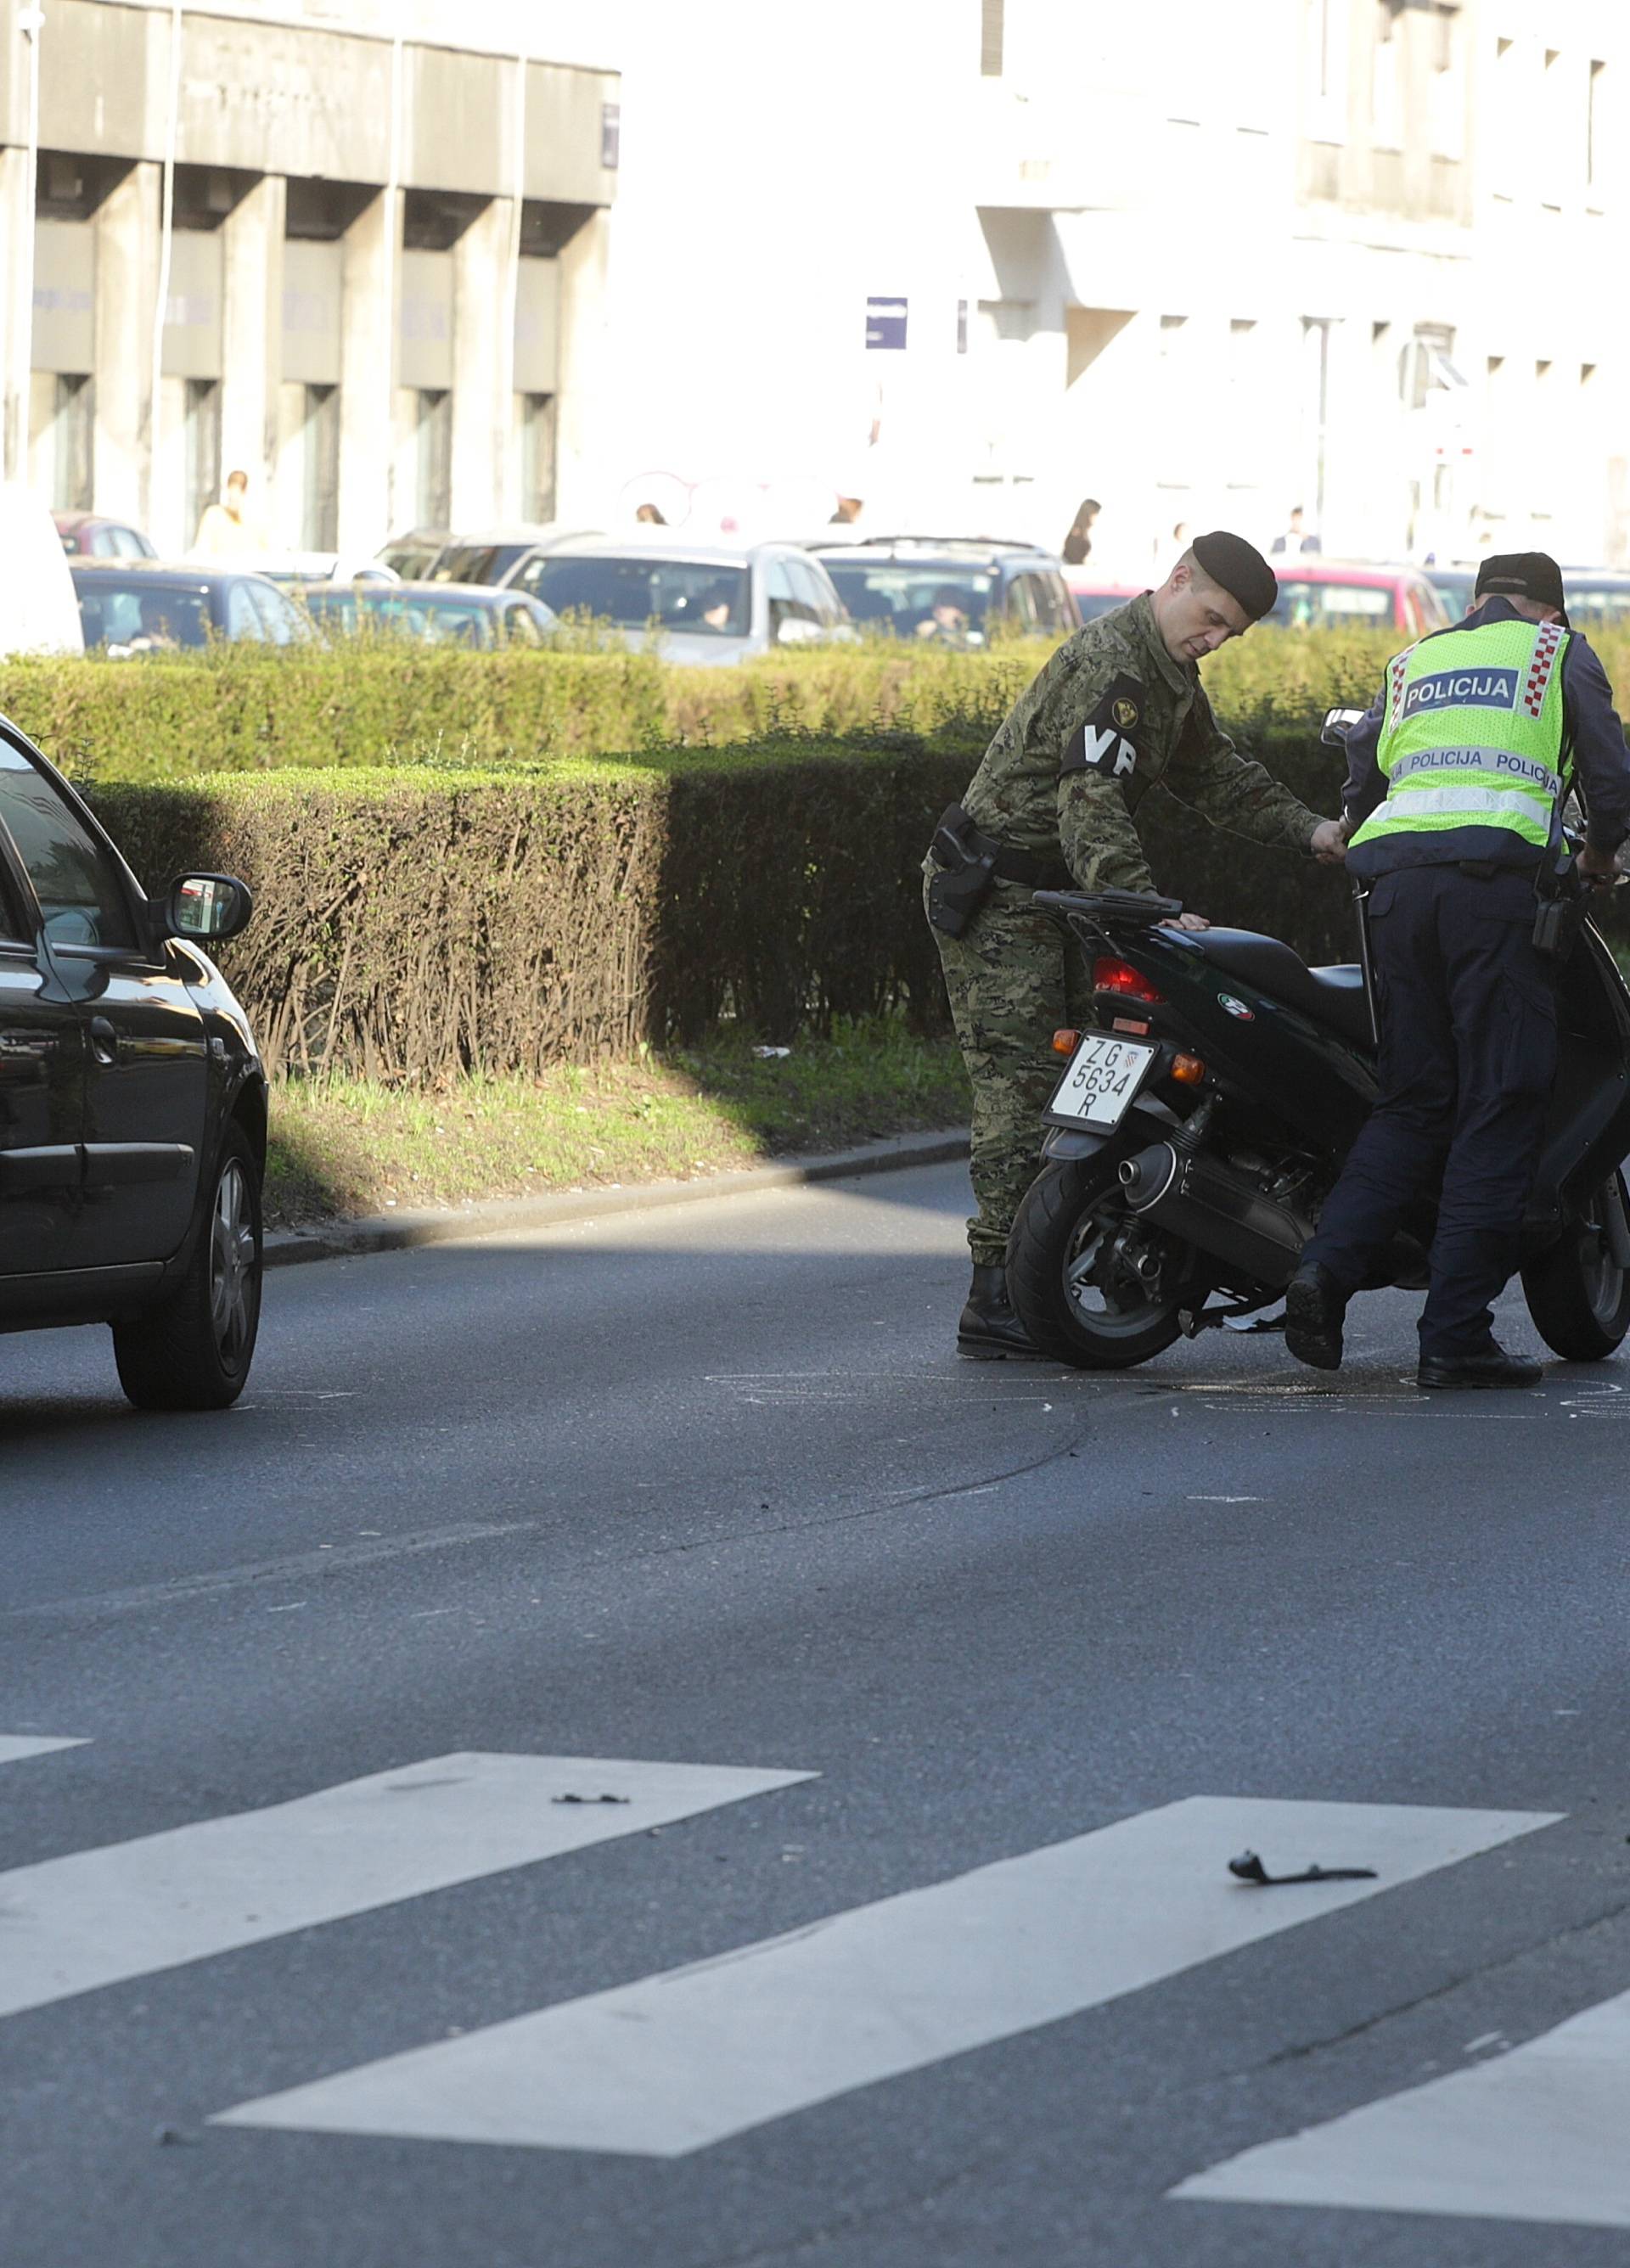 Sudarili su se auto i skuter u Zagrebu, jedan čovjek ozlijeđen